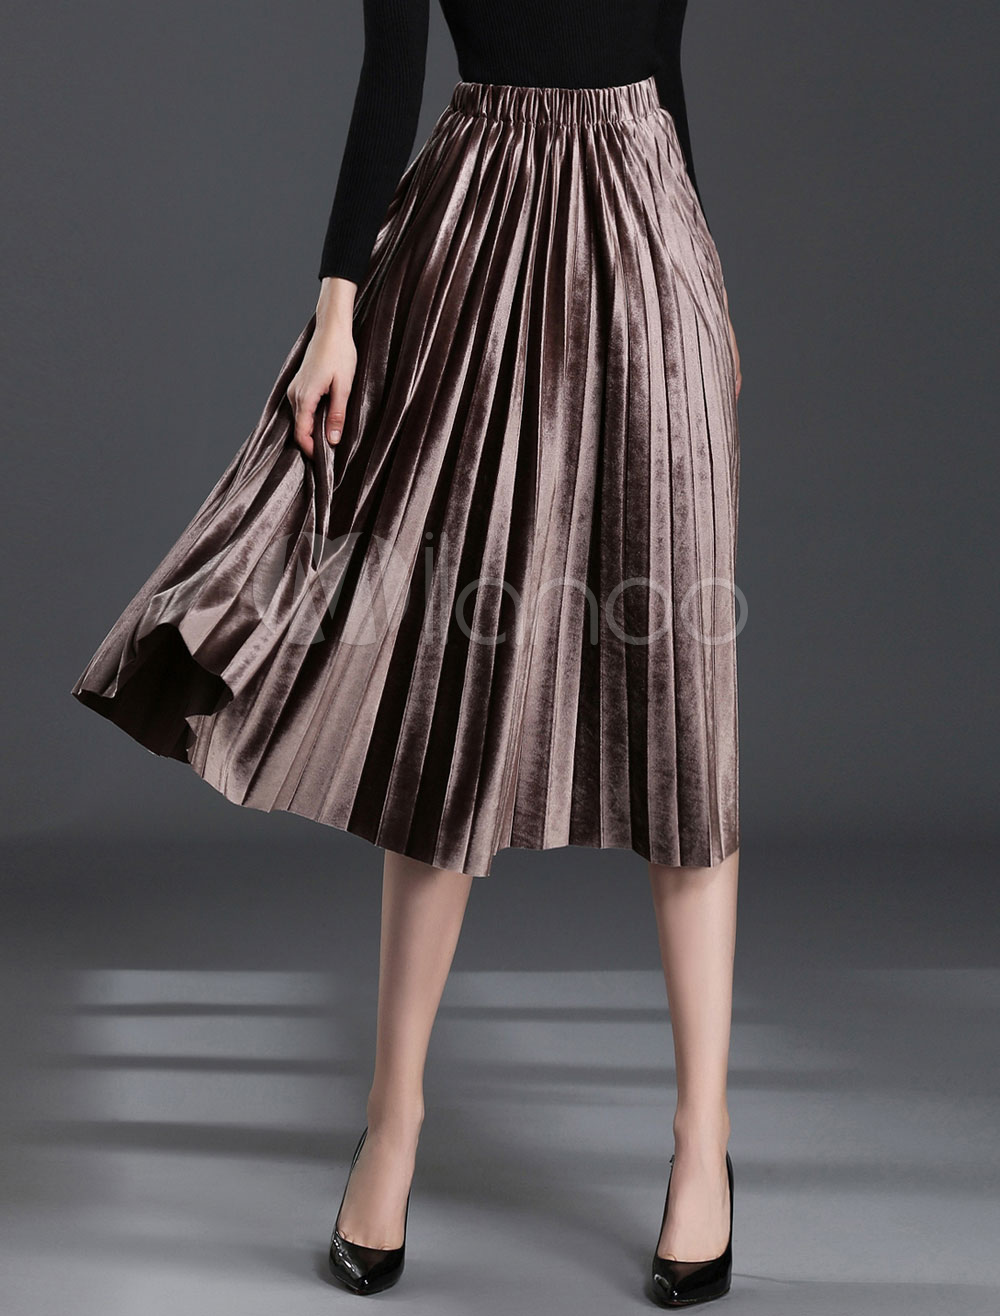 Velvet Pleated Skirt Dark Brown Vintage Midi Skirt For Women - Milanoo.com